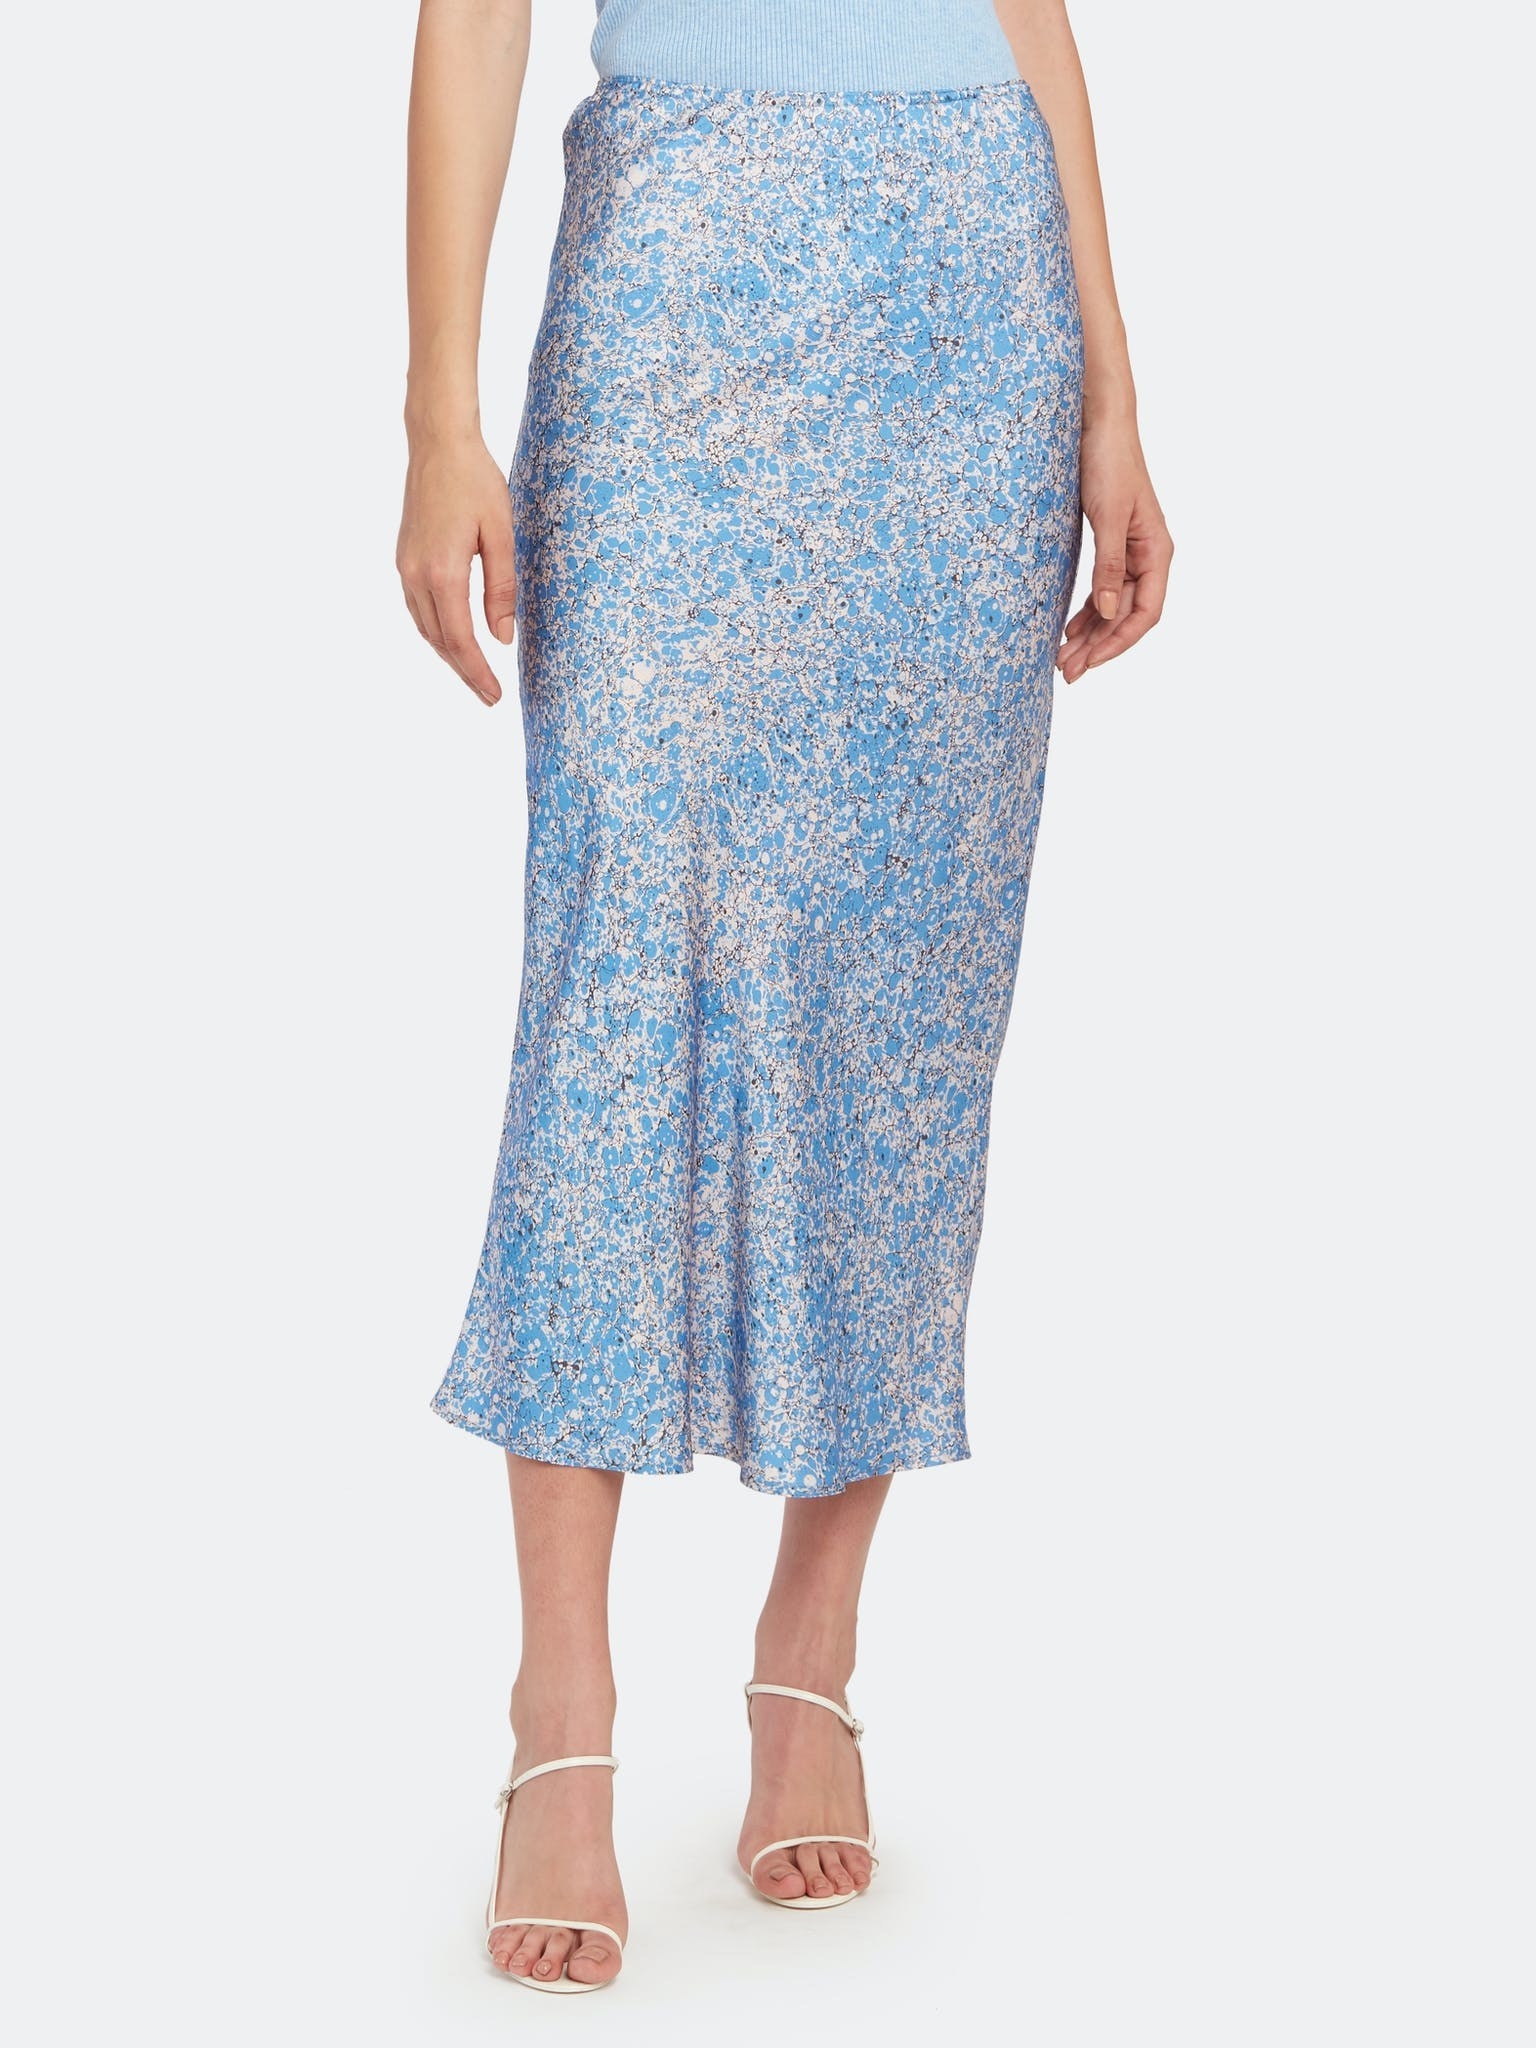 the blue midi skirt